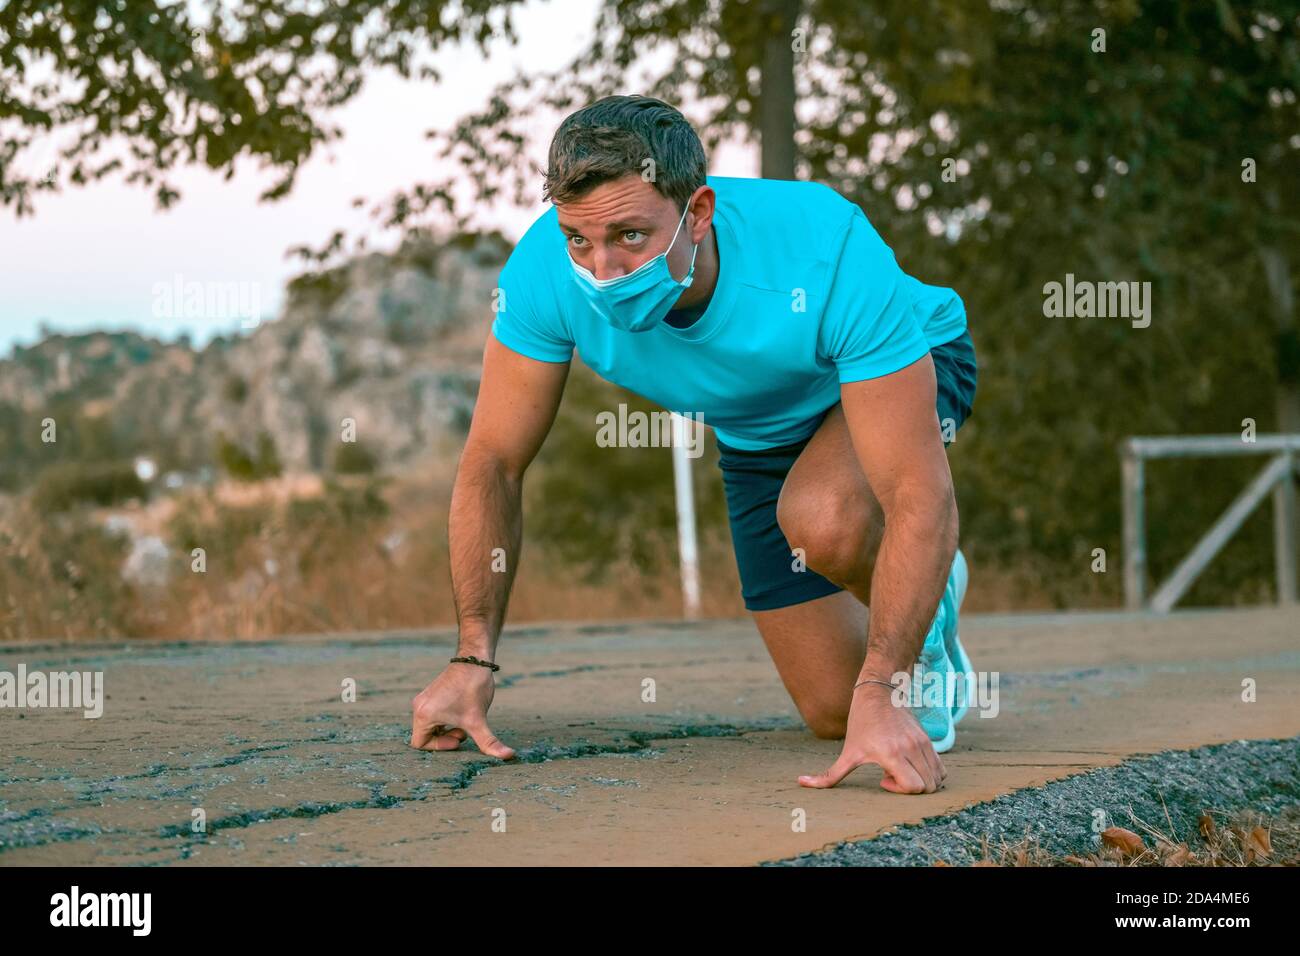 Porträt eines jungen kaukasischen Mannes mit blauem T-Shirt Vorbereitung auf einen Lauf in einem Park Stockfoto